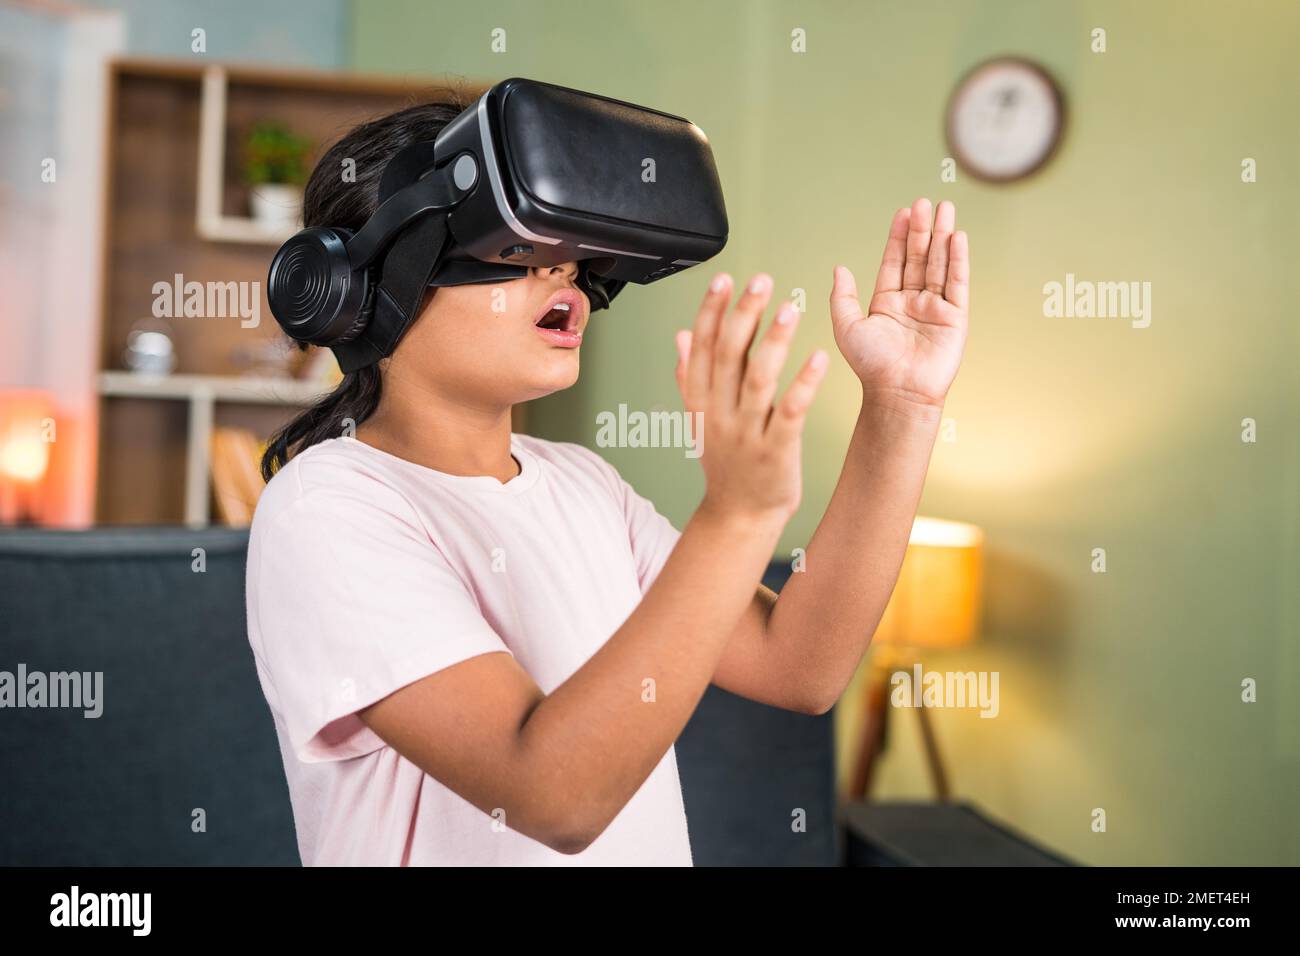 Ragazza eccitata con un'esperienza di wow durante l'uso di realtà virtuale o di visore per realtà virtuale che percepiva oggetti cercando di toccare in aria sul metaverse - concetto di Foto Stock